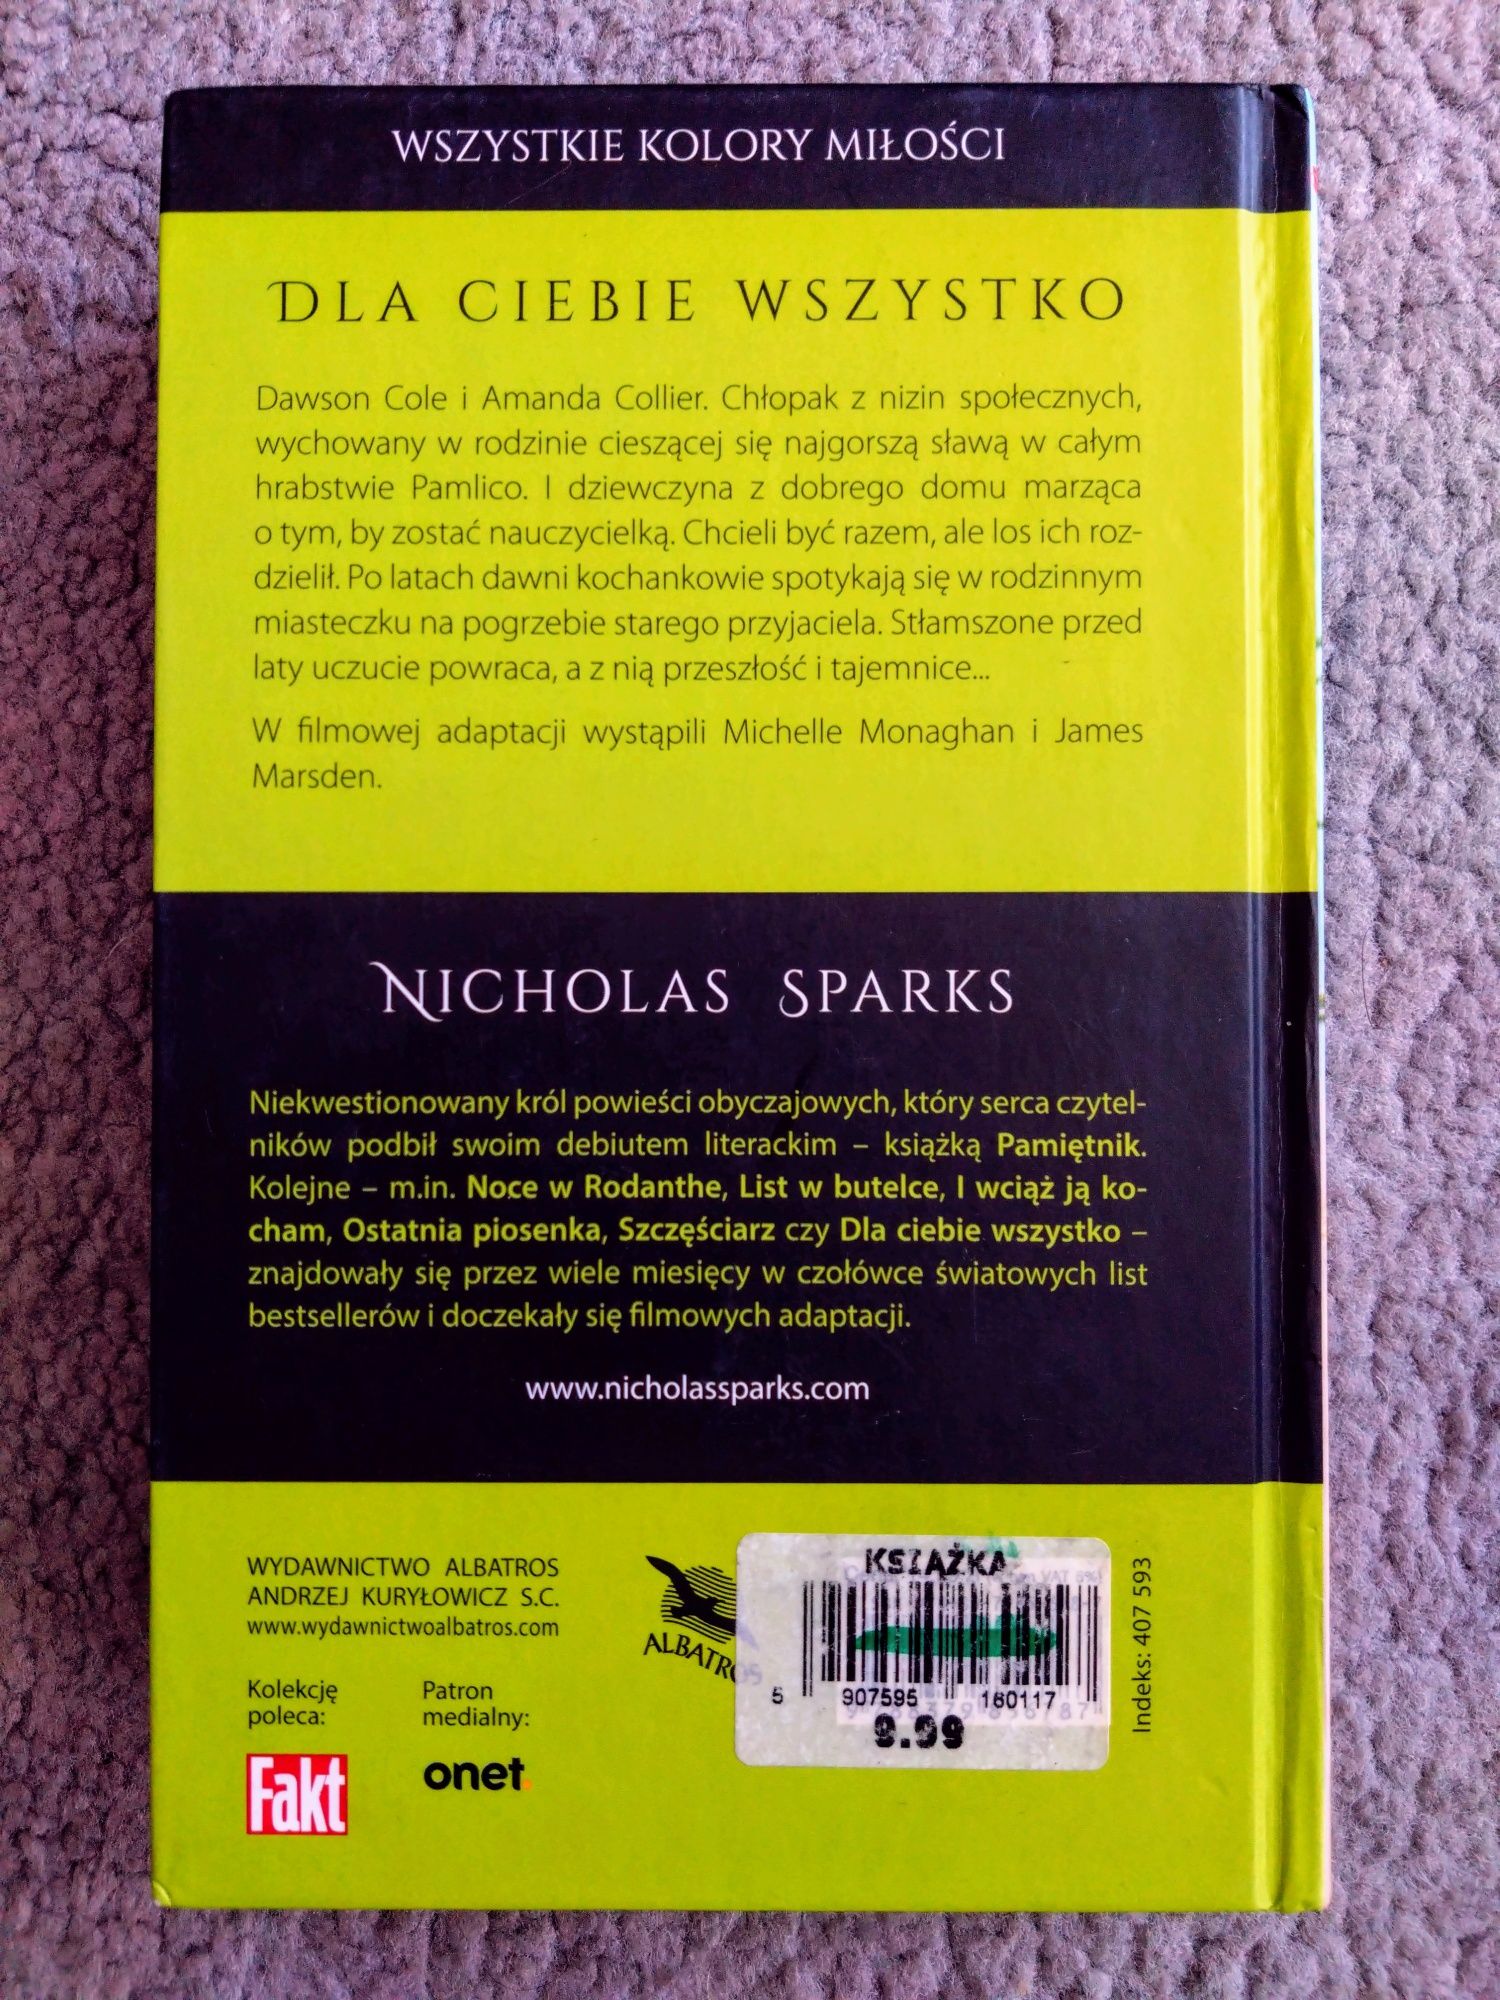 Nicholas Sparks - Dla Ciebie wszystko.